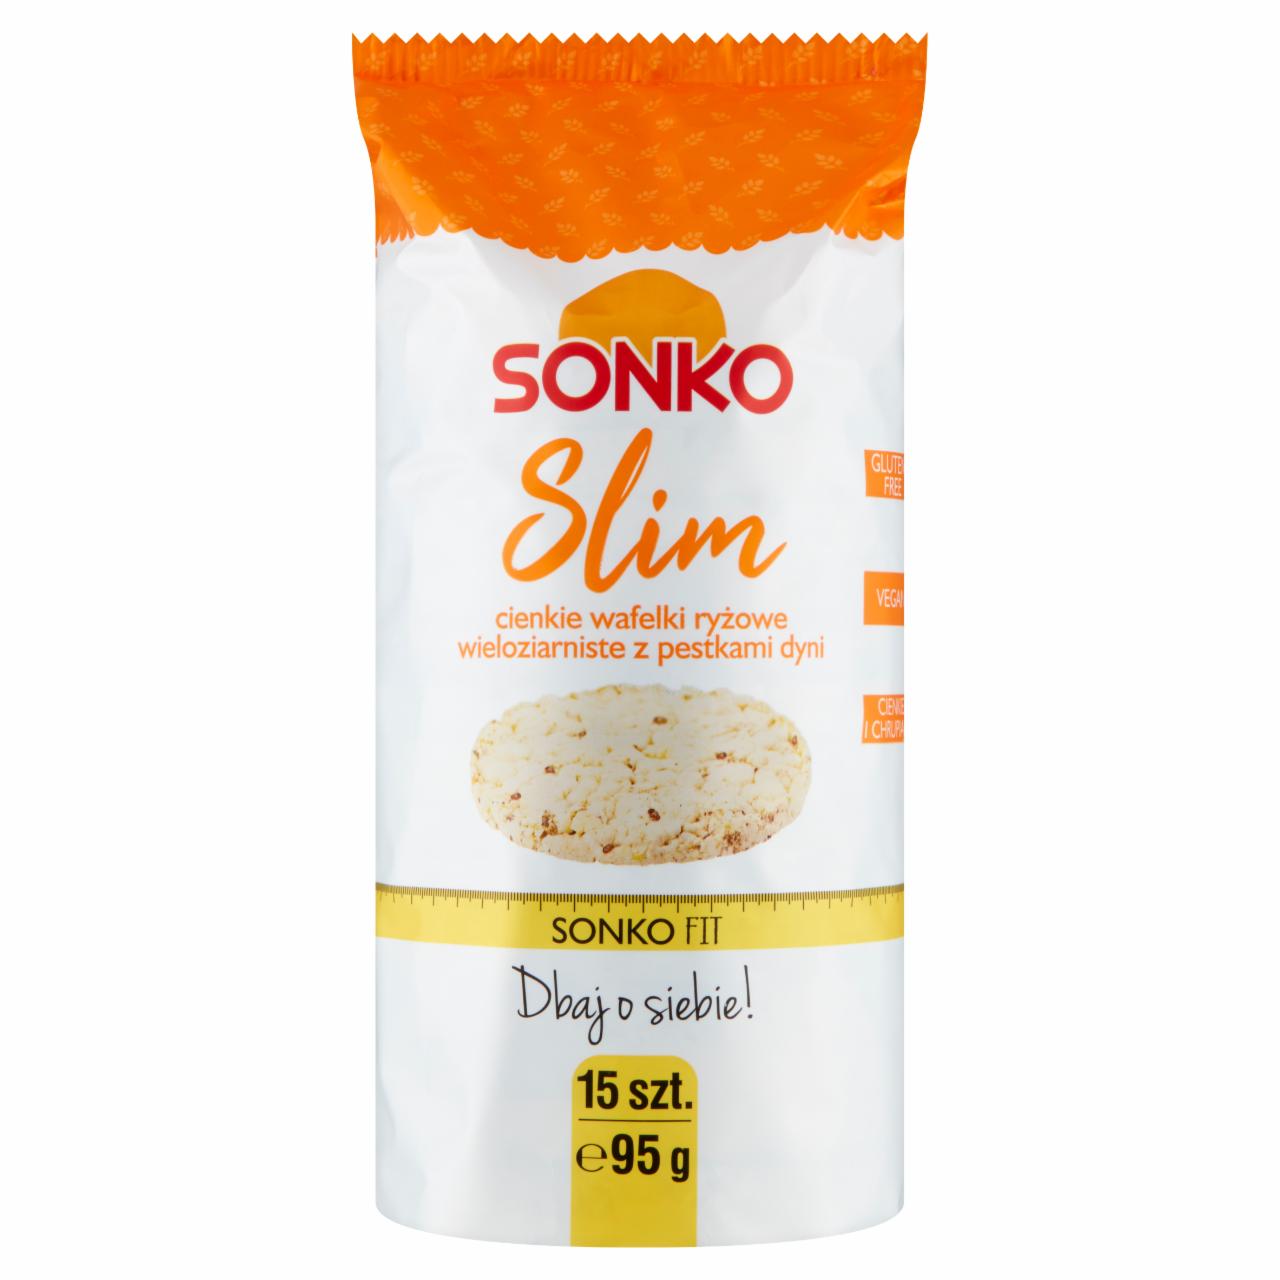 Zdjęcia - Sonko Slim Cienkie wafelki ryżowe wieloziarniste z pestkami dyni 95 g (15 sztuk)